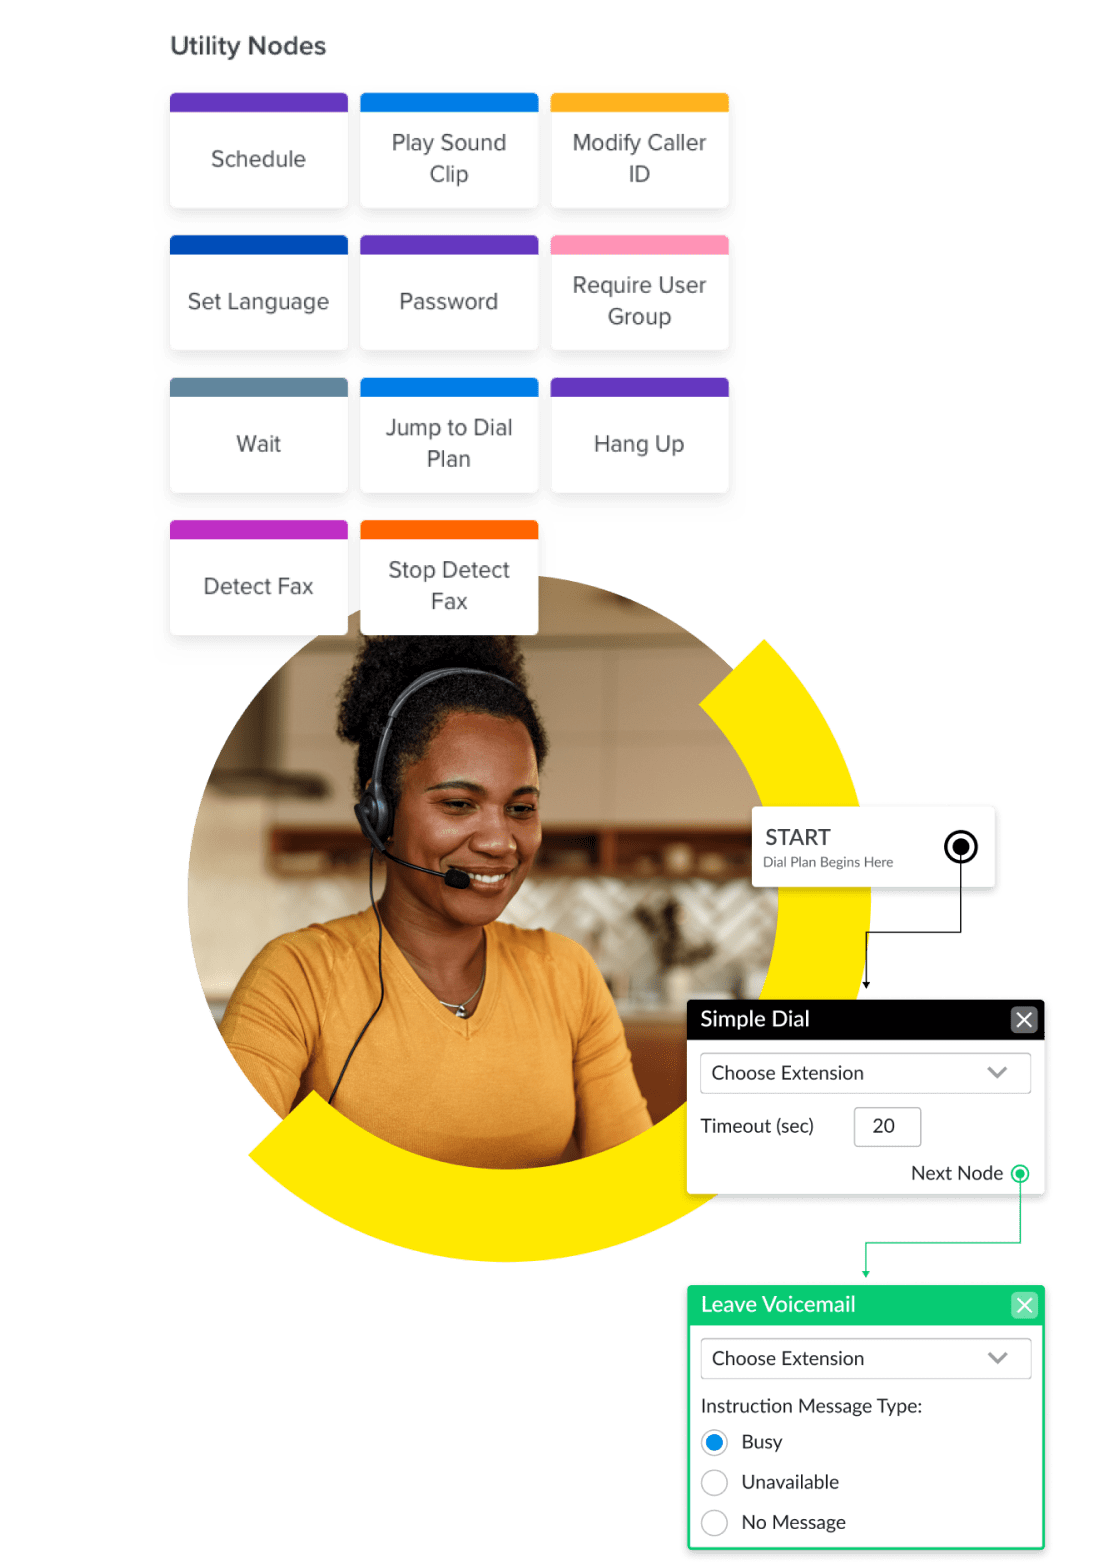 Colagem da interface de administração do GoTo Connect, exibindo o editor visual de planos de discagem, opções de espera, correio de voz, atendentes virtuais, programação e discagem simples.